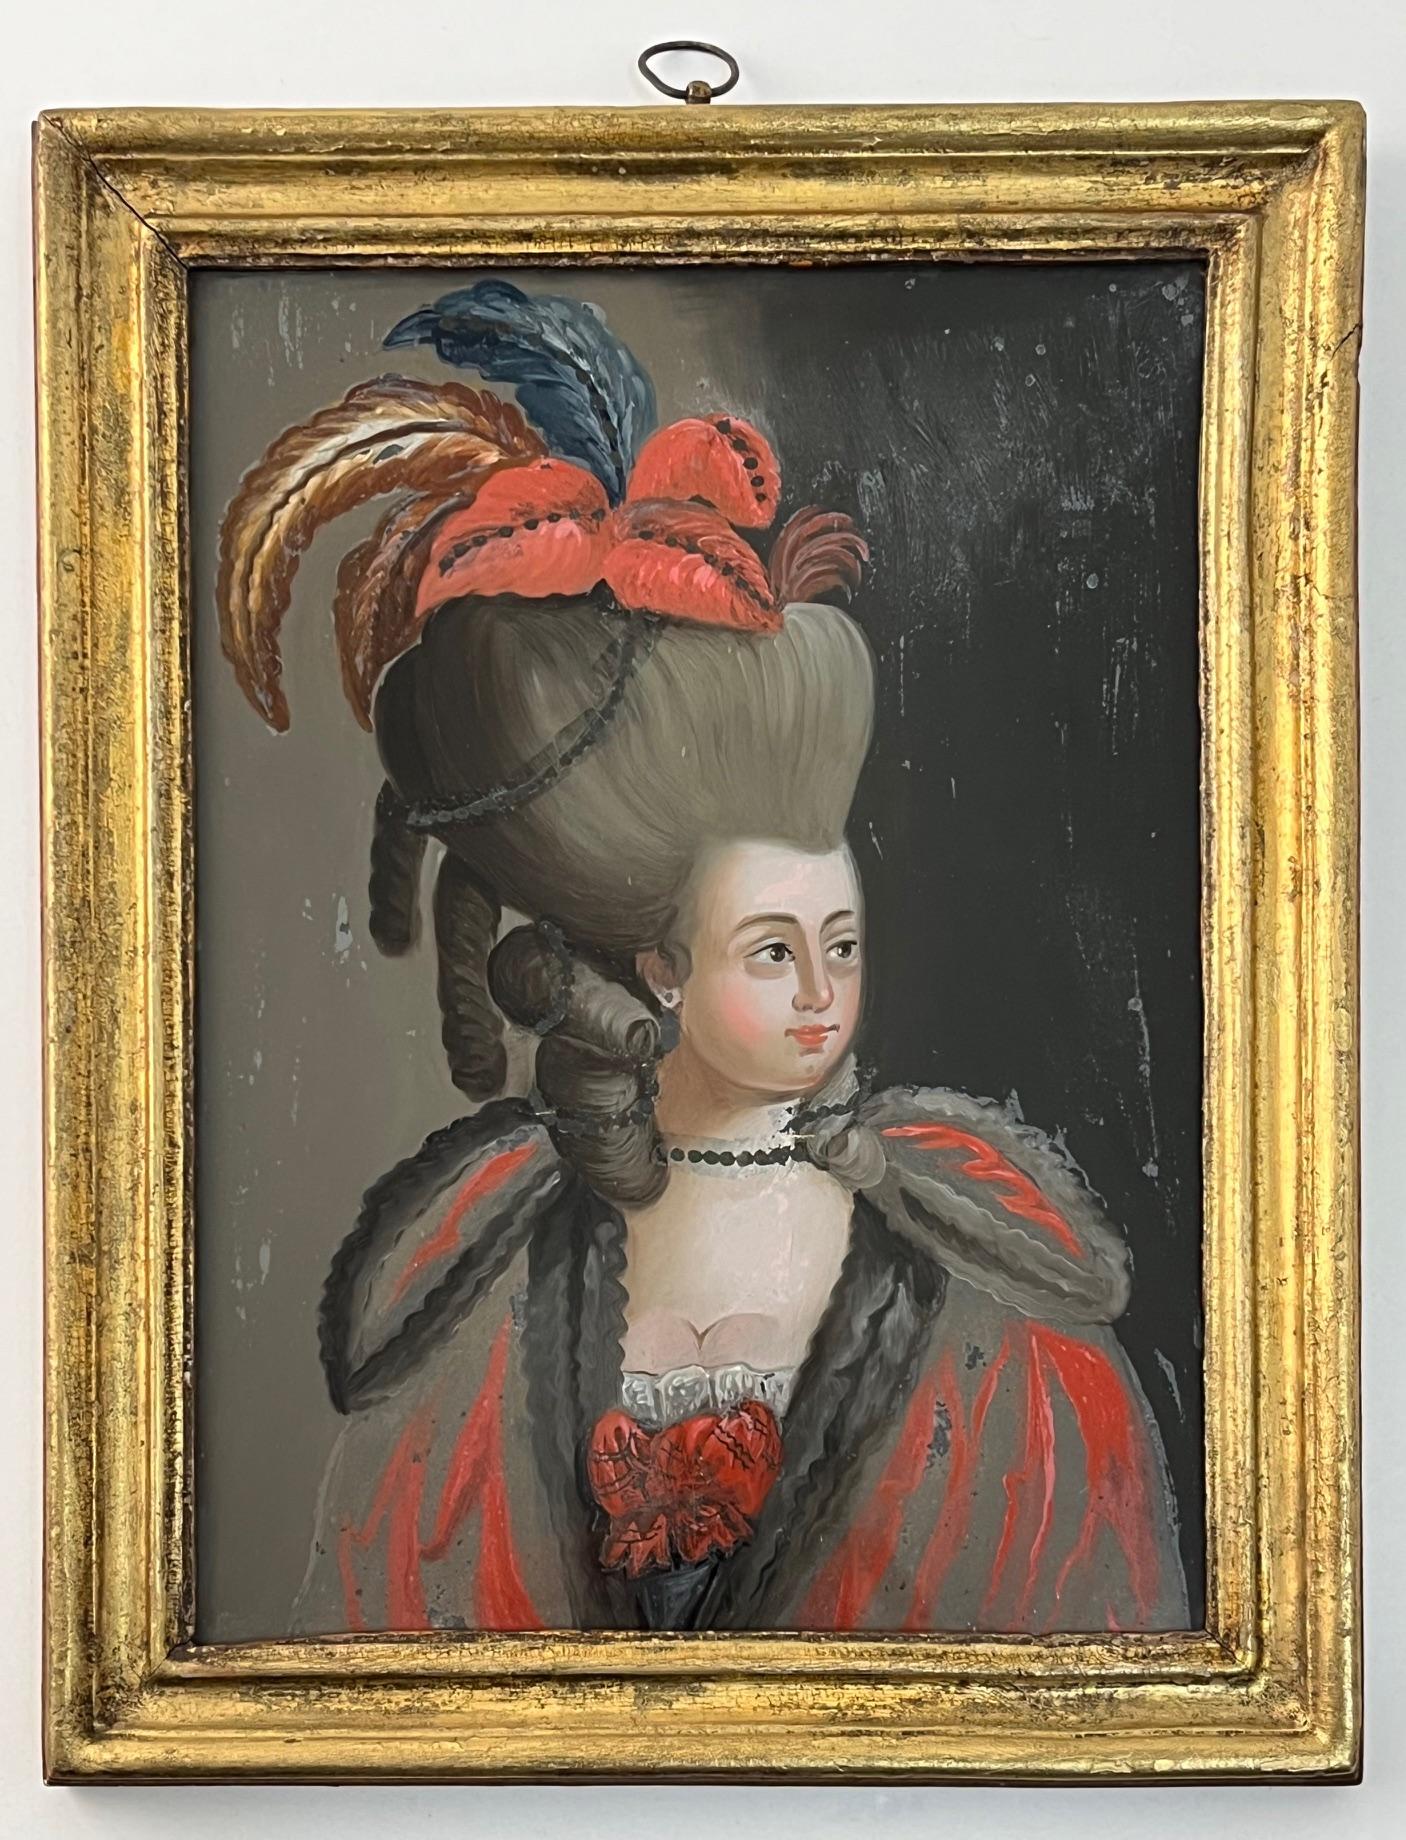 Magnifique peinture italienne naïve vers 1775, en verre inversé polychrome, de fabrication romaine, représentant une dame noble ou à la mode dans une tenue somptueuse, dans son cadre d'origine en bois doré moulé.  La plaque de verre mesure 9